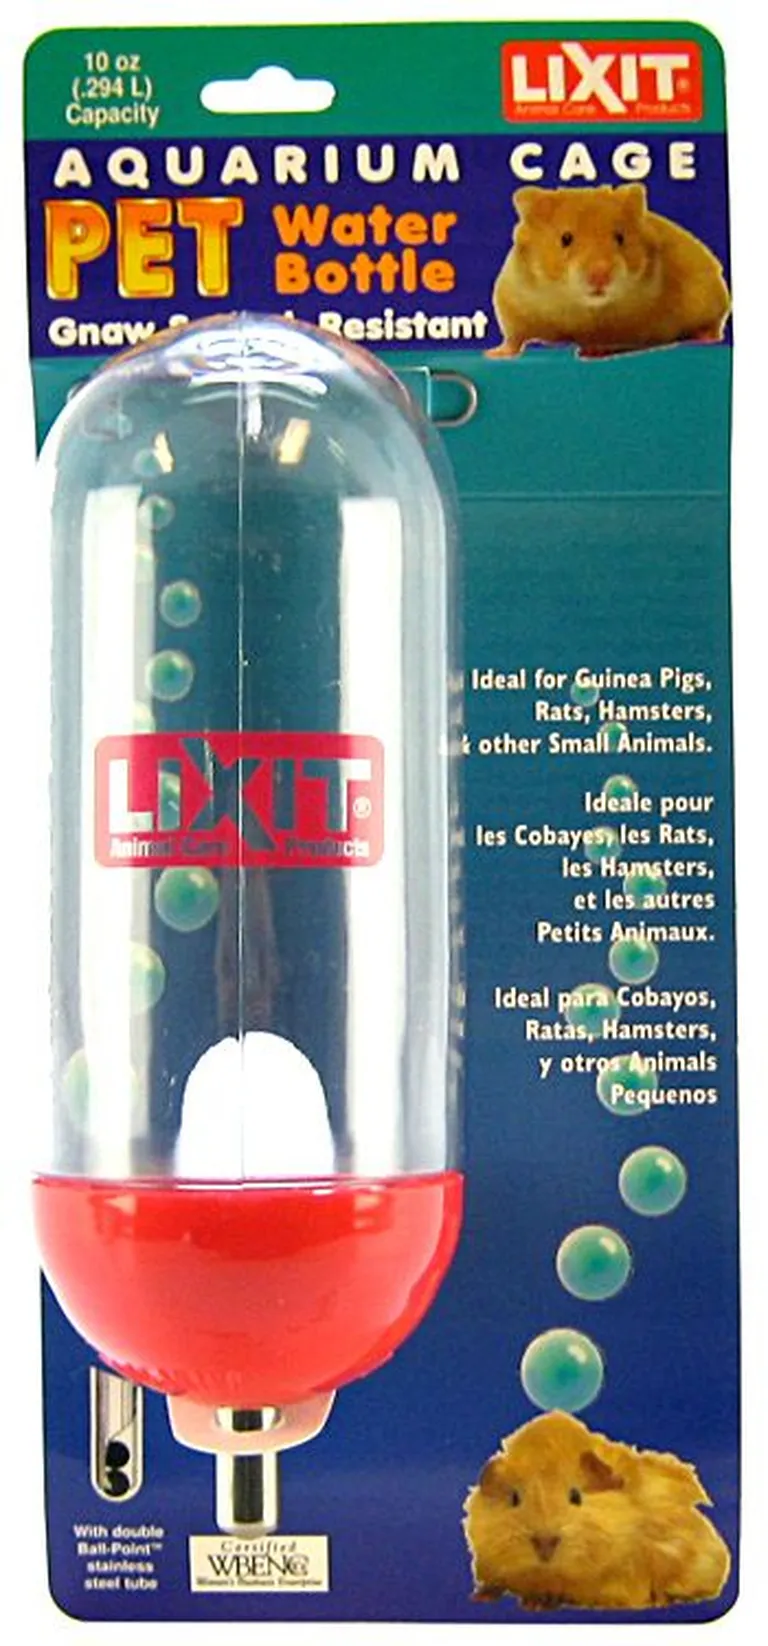 Lixit Aquarium Cage Water Bottle Photo 2